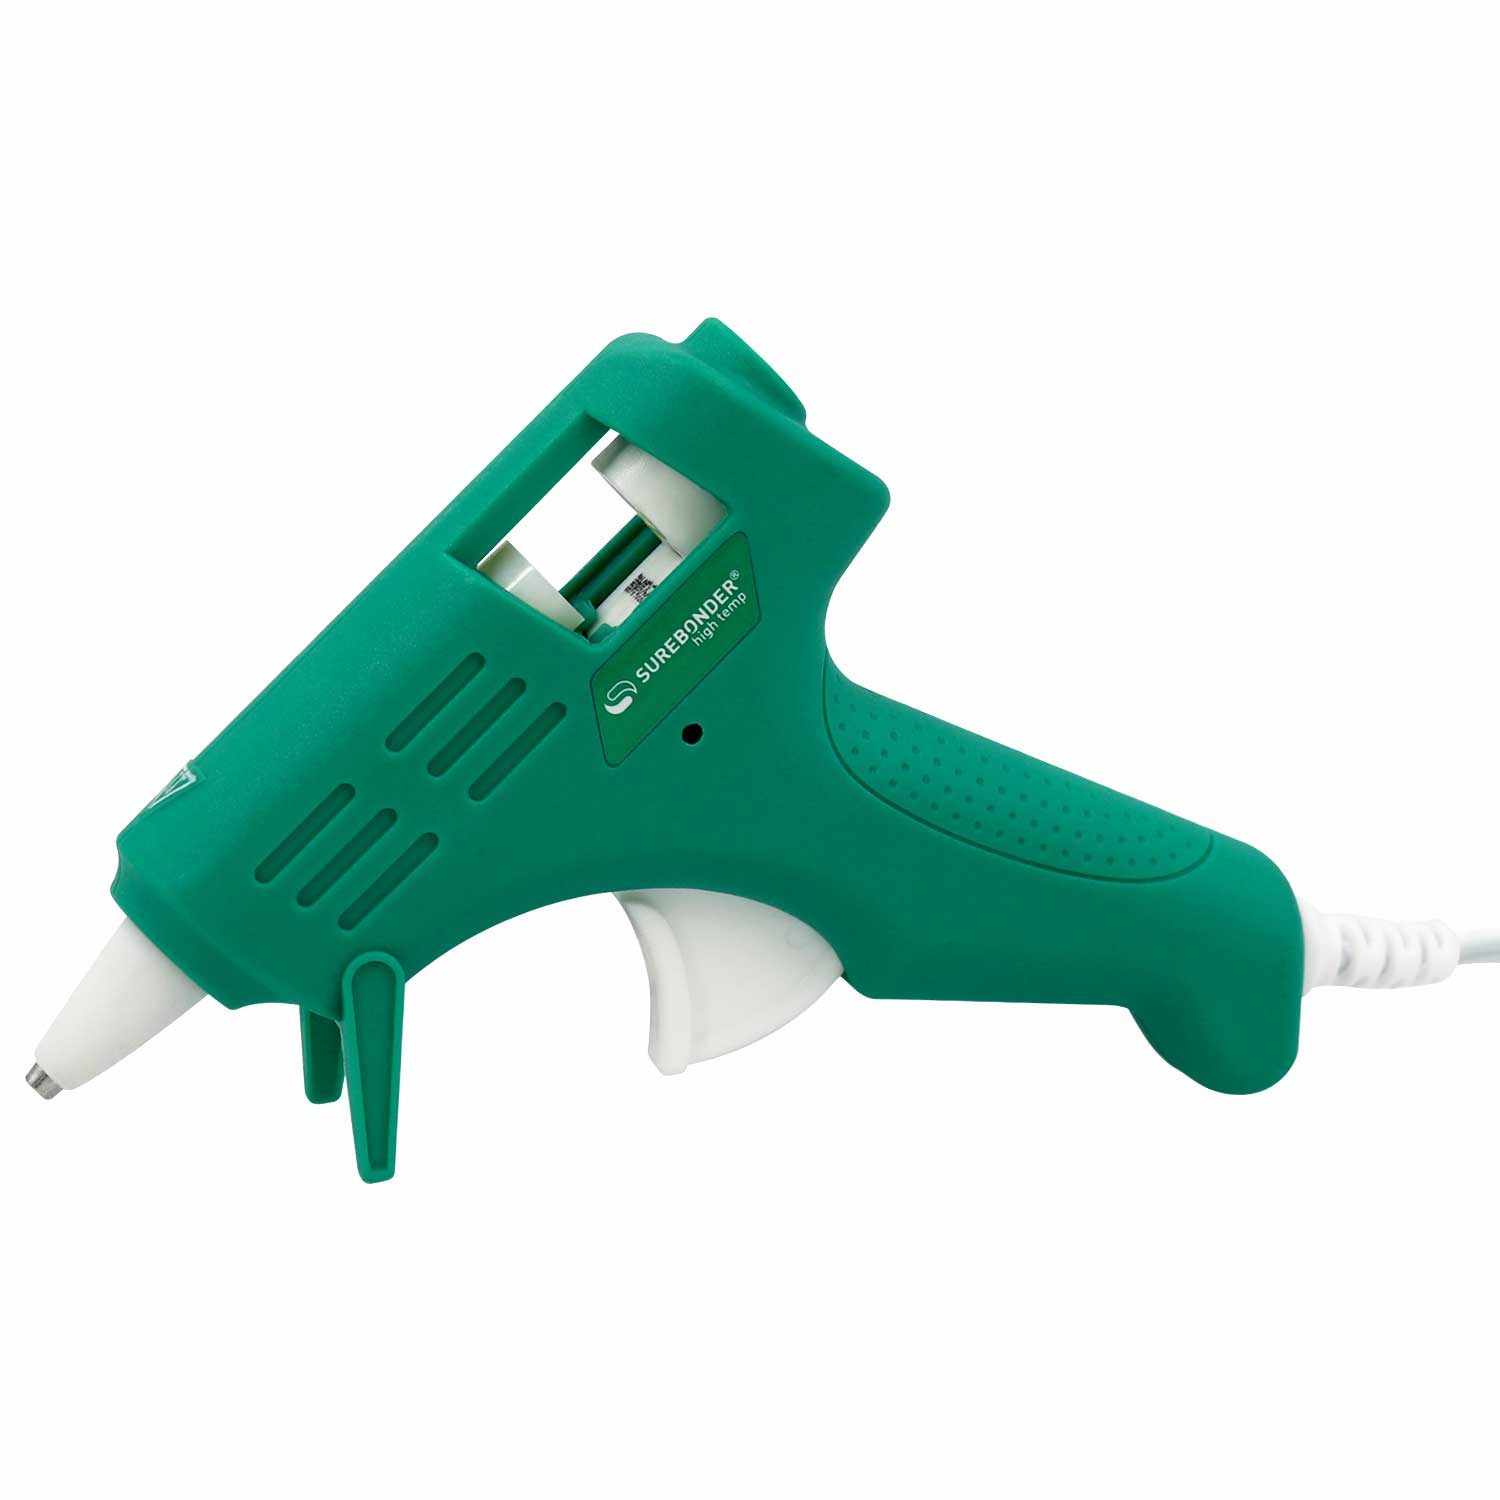 Surebonder Essentials Series Mini Dual Temperature Hot Glue Gun